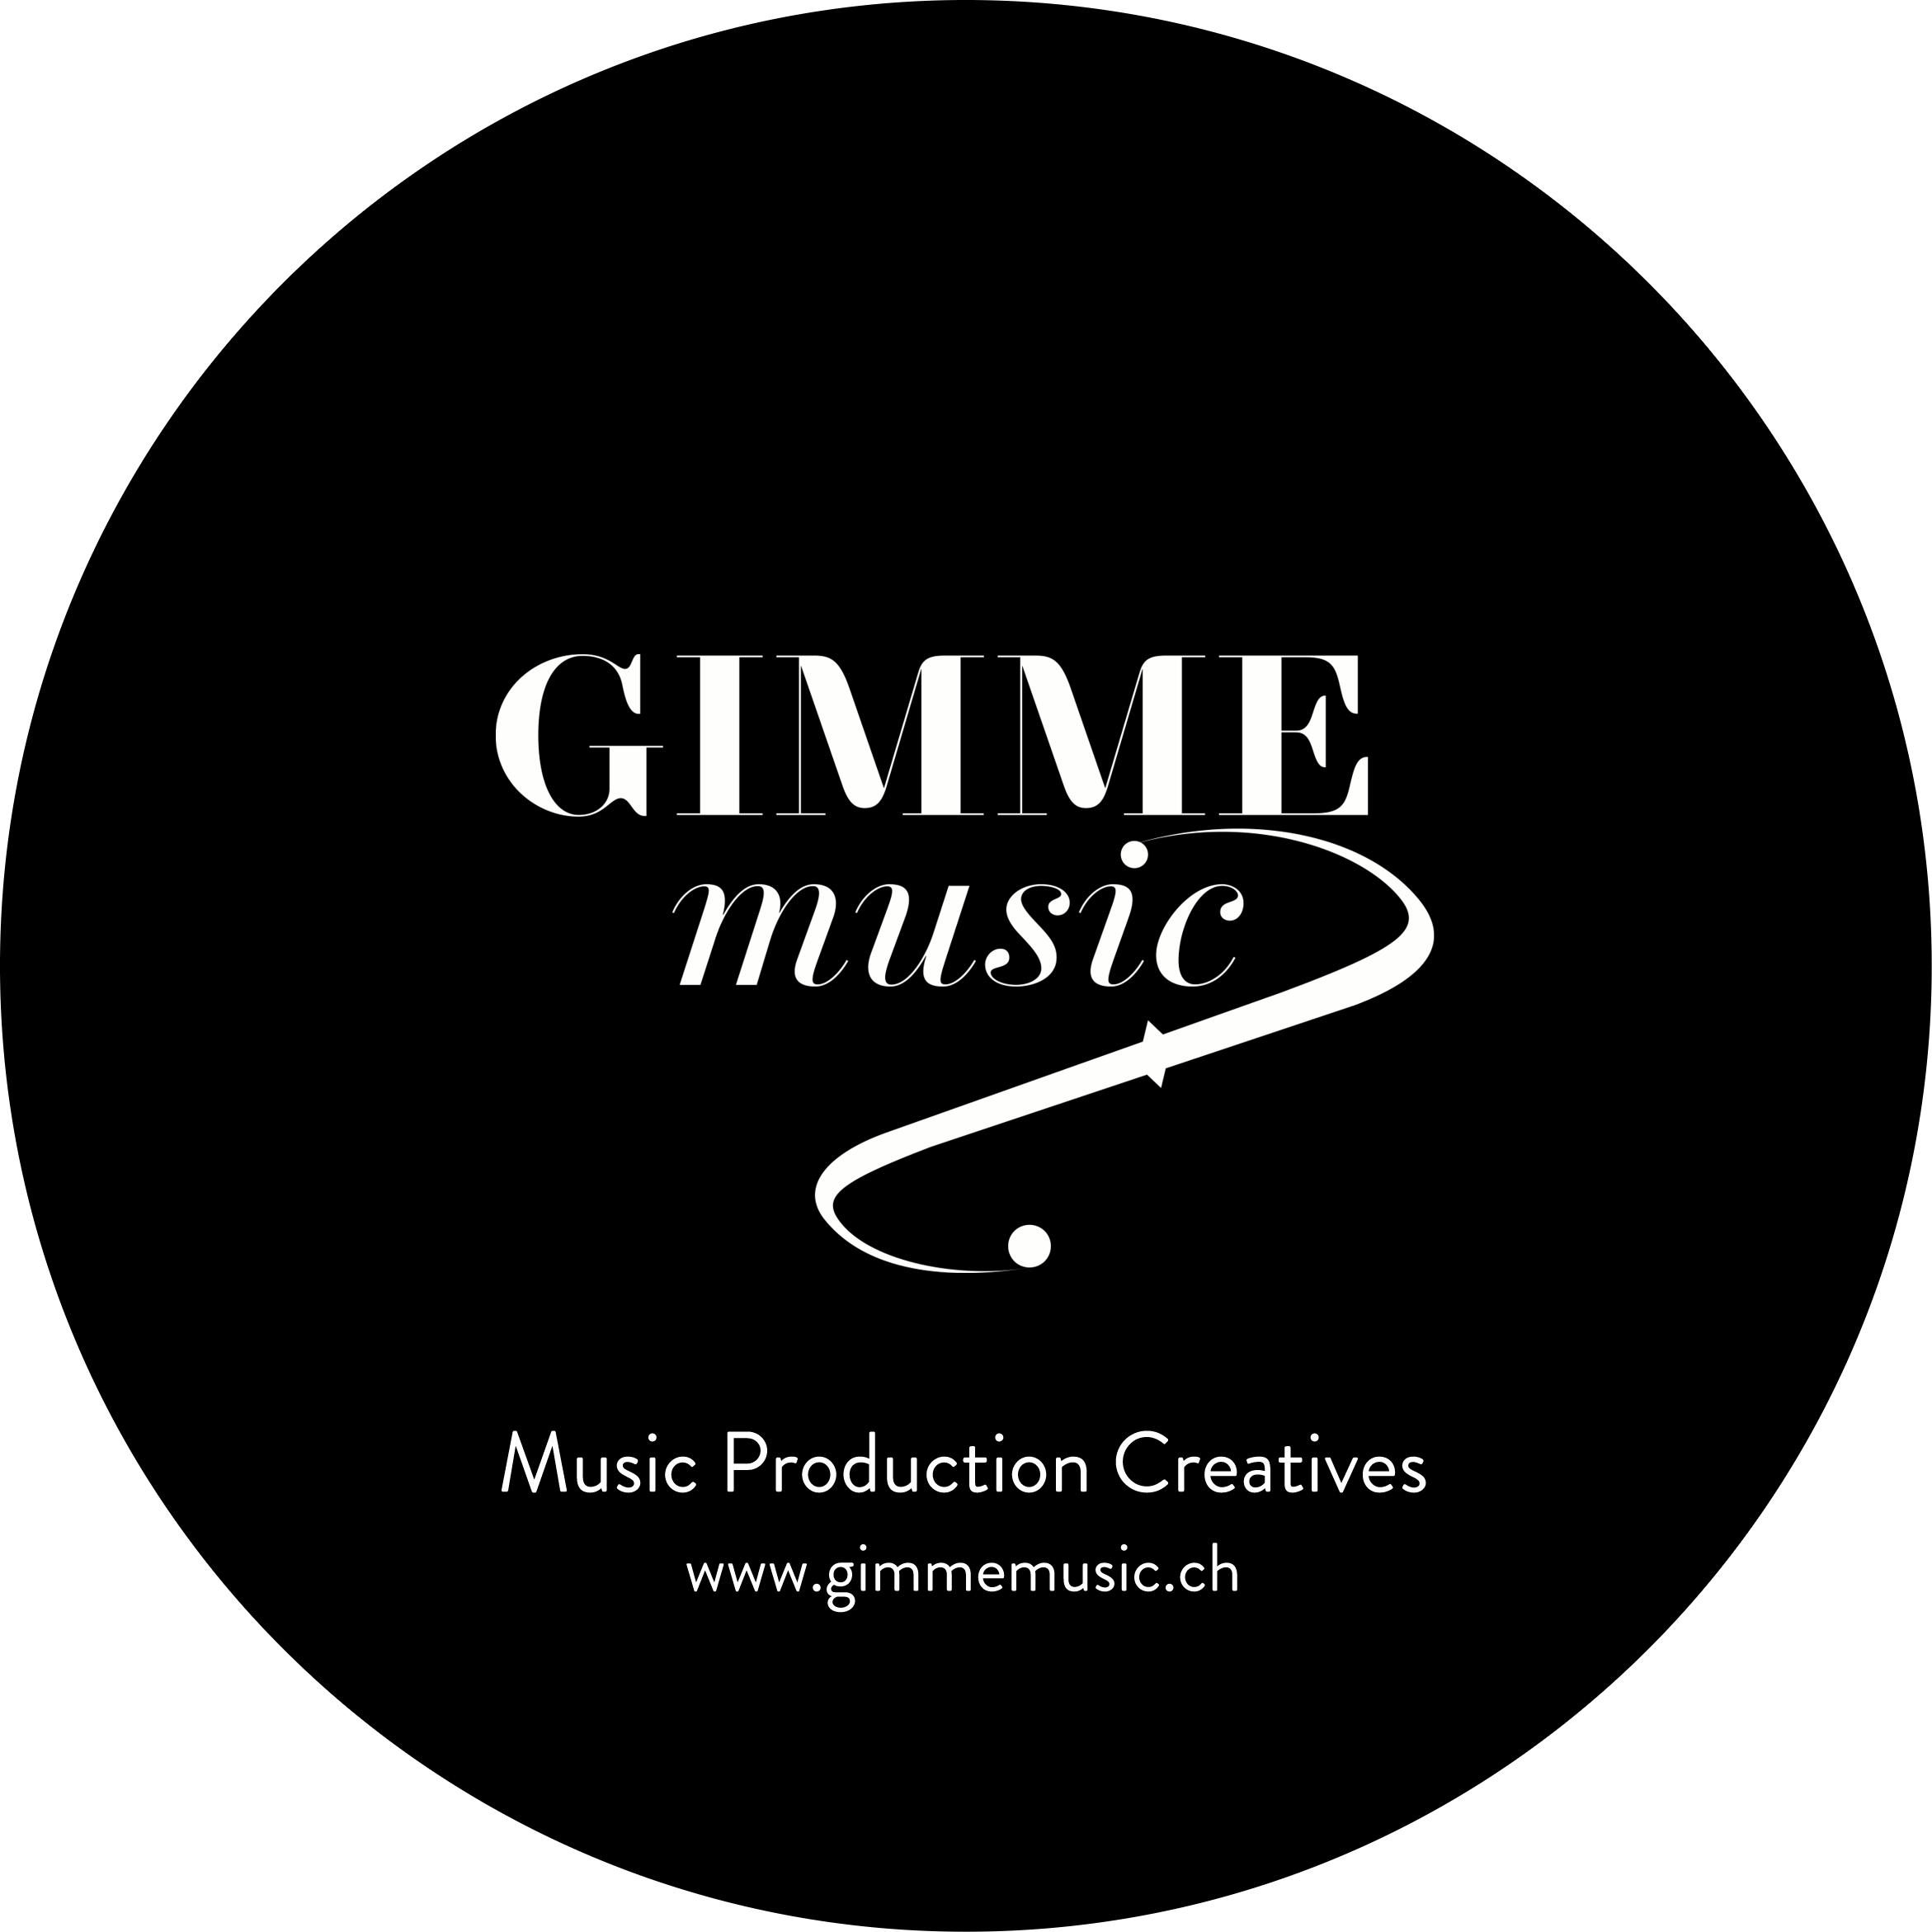 Gimmemusic production